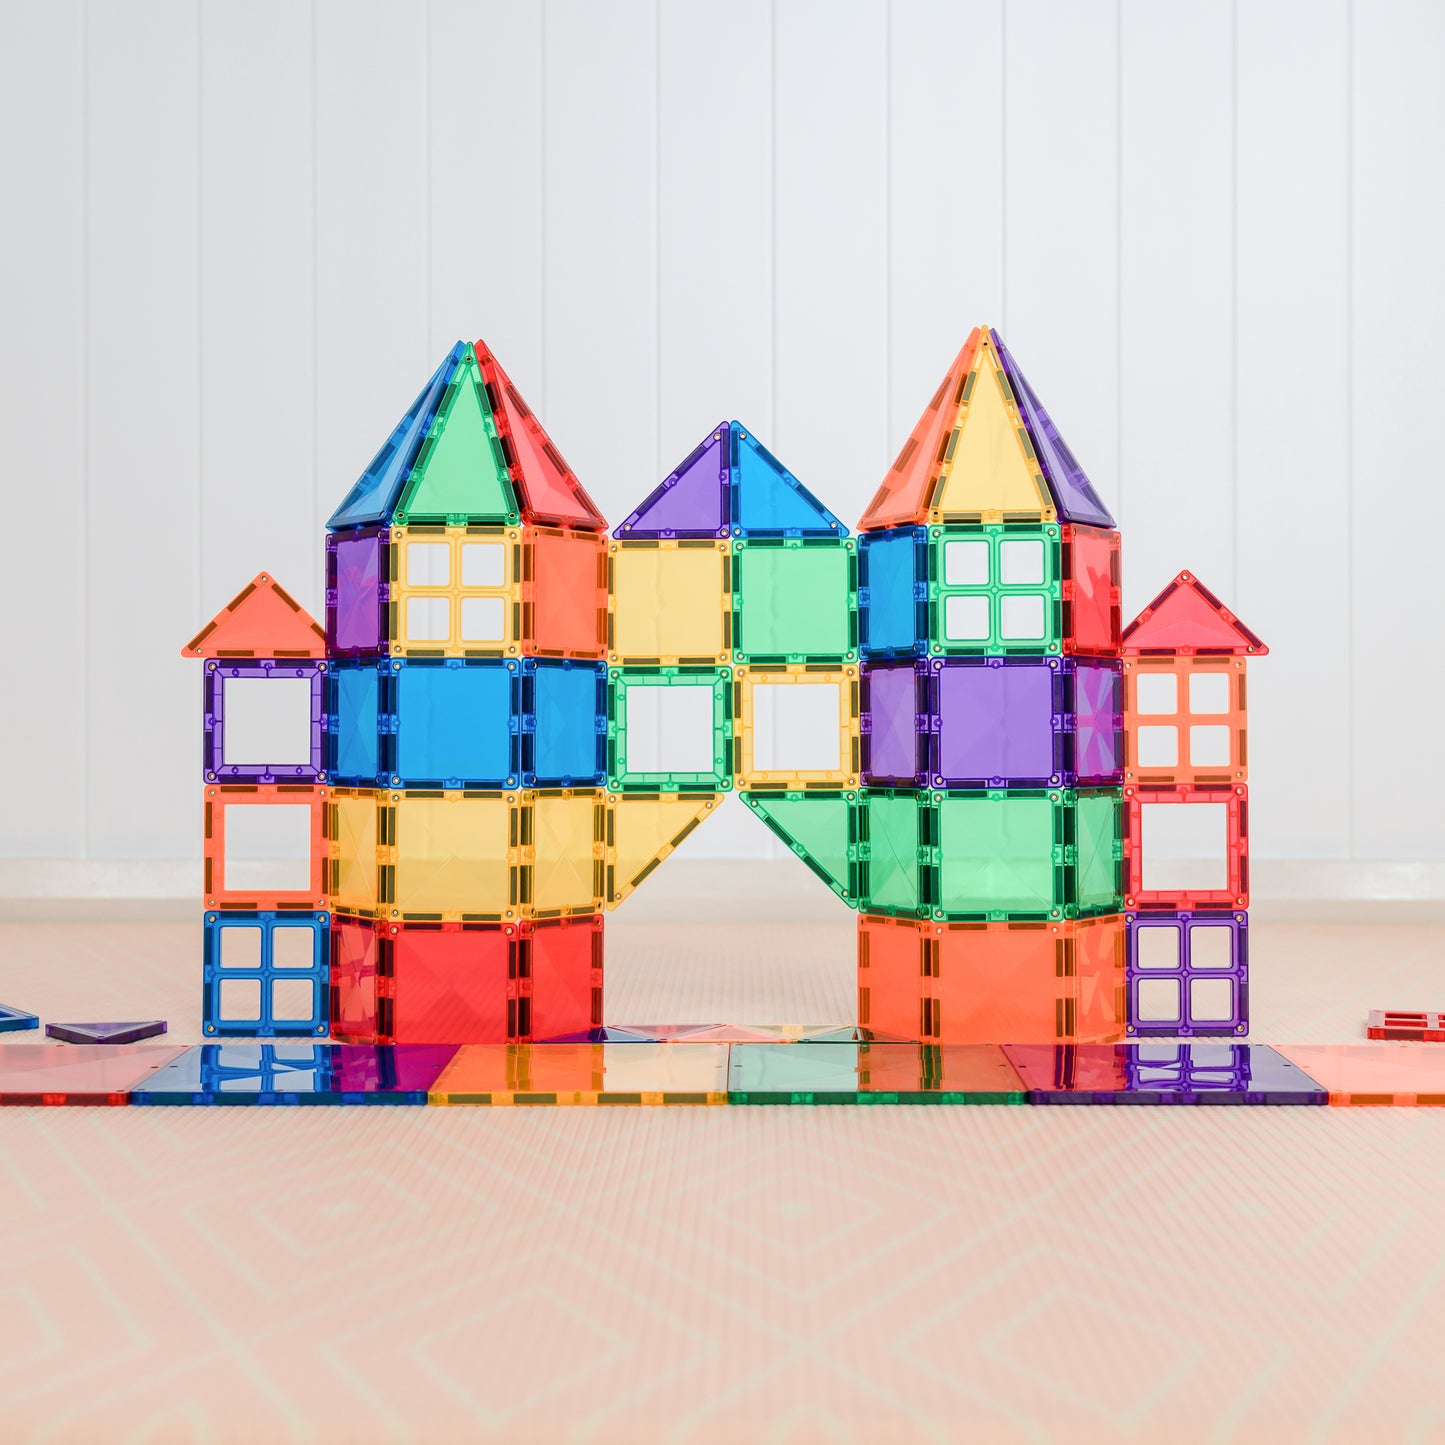 
                  
                    Rainbow Connetix Tiles - 60 Piece Starter Pack
                  
                